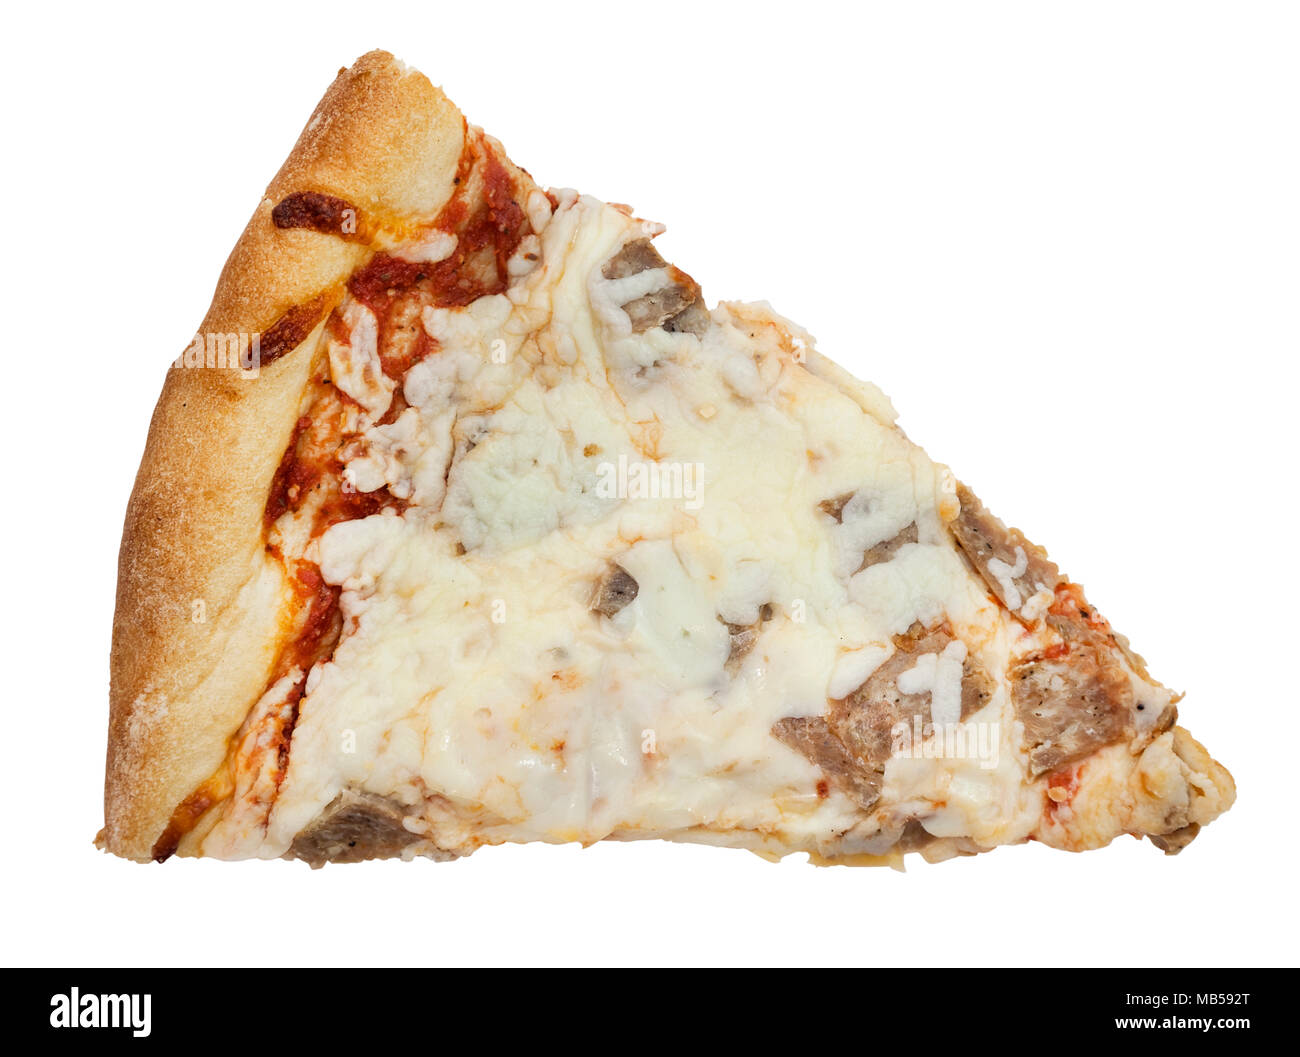 Ihre grundlegende kalten übrig gebliebene Scheibe Wurst Pizza mit extra Käse. Isoliert. Stockfoto